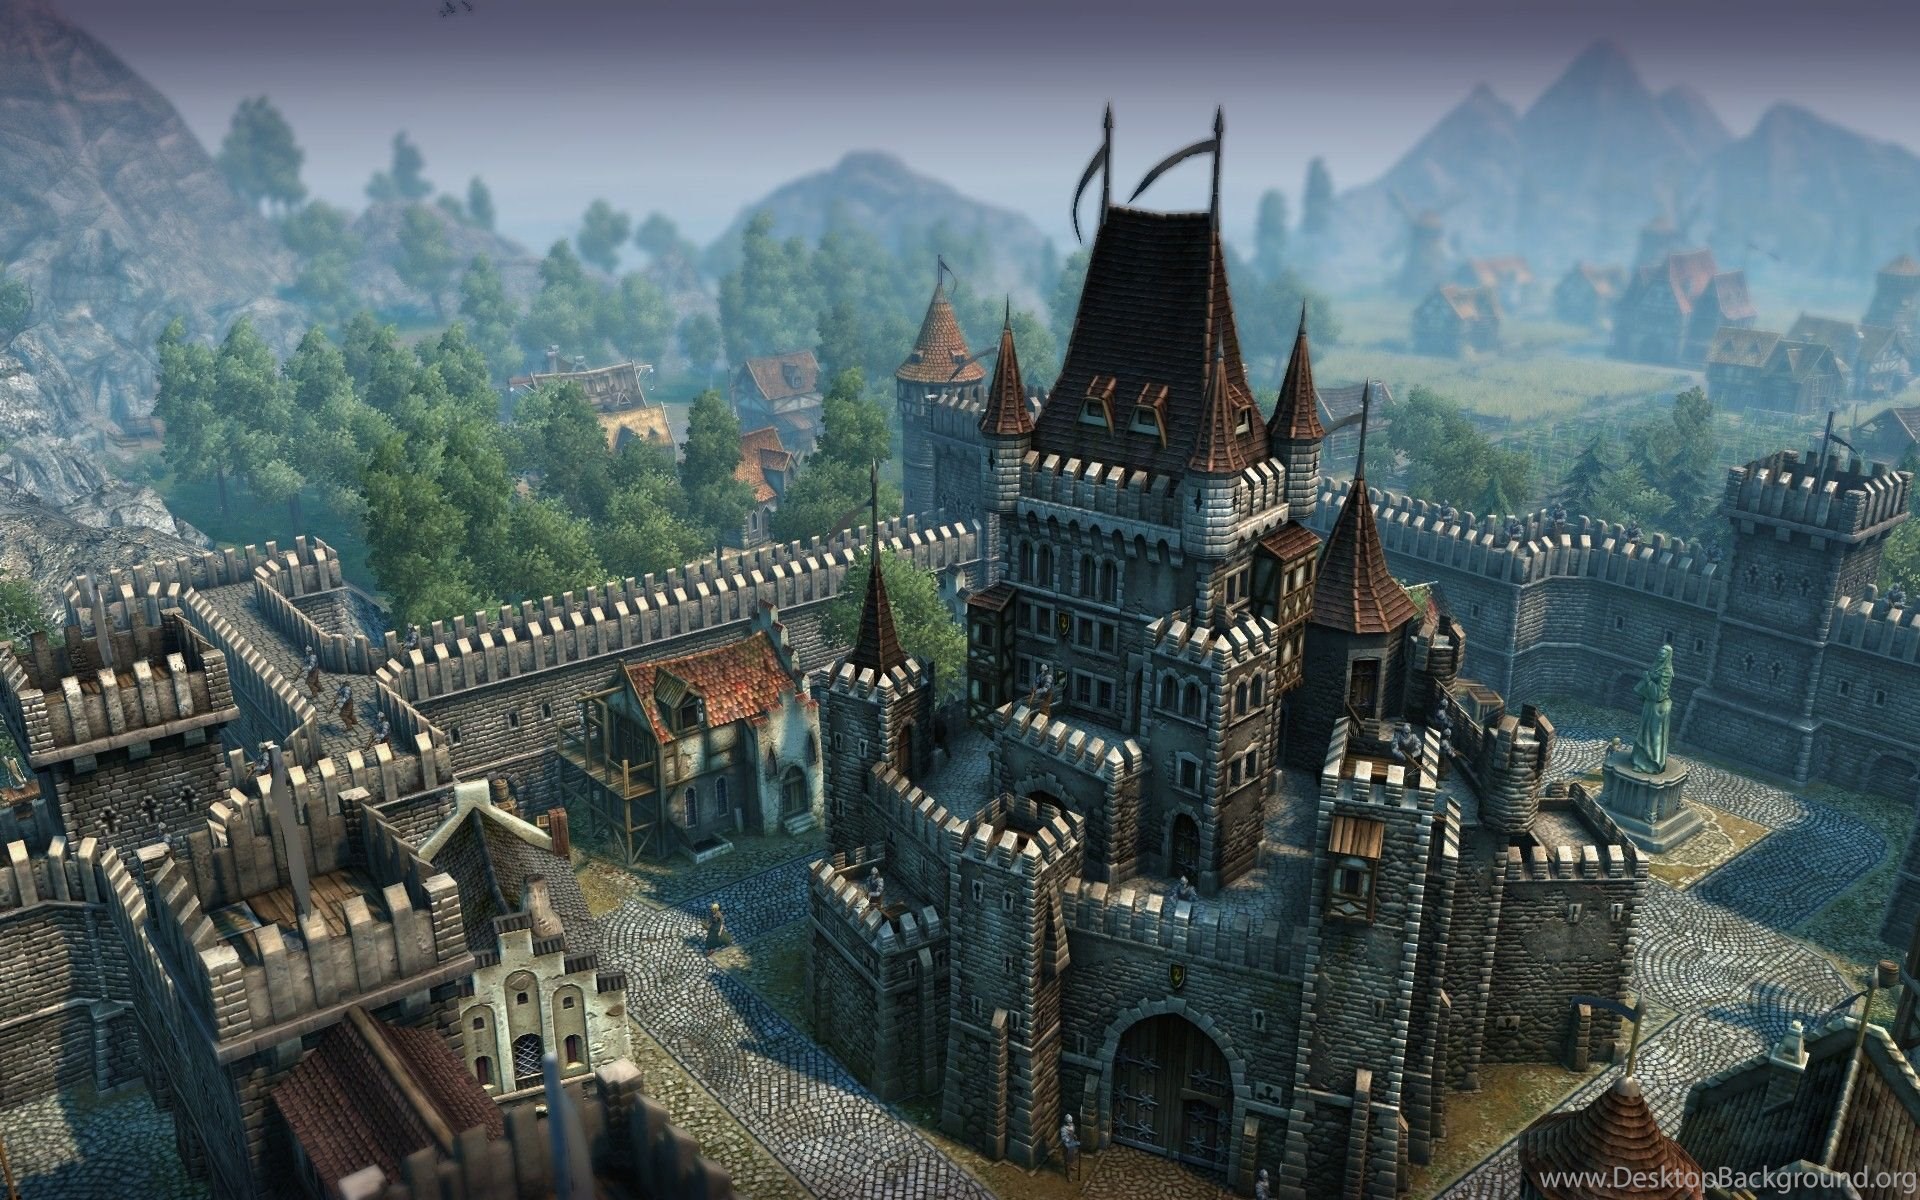 Medieval Castle HD Wallpaper, Medieval Castle Desktop Background. Desktop Background